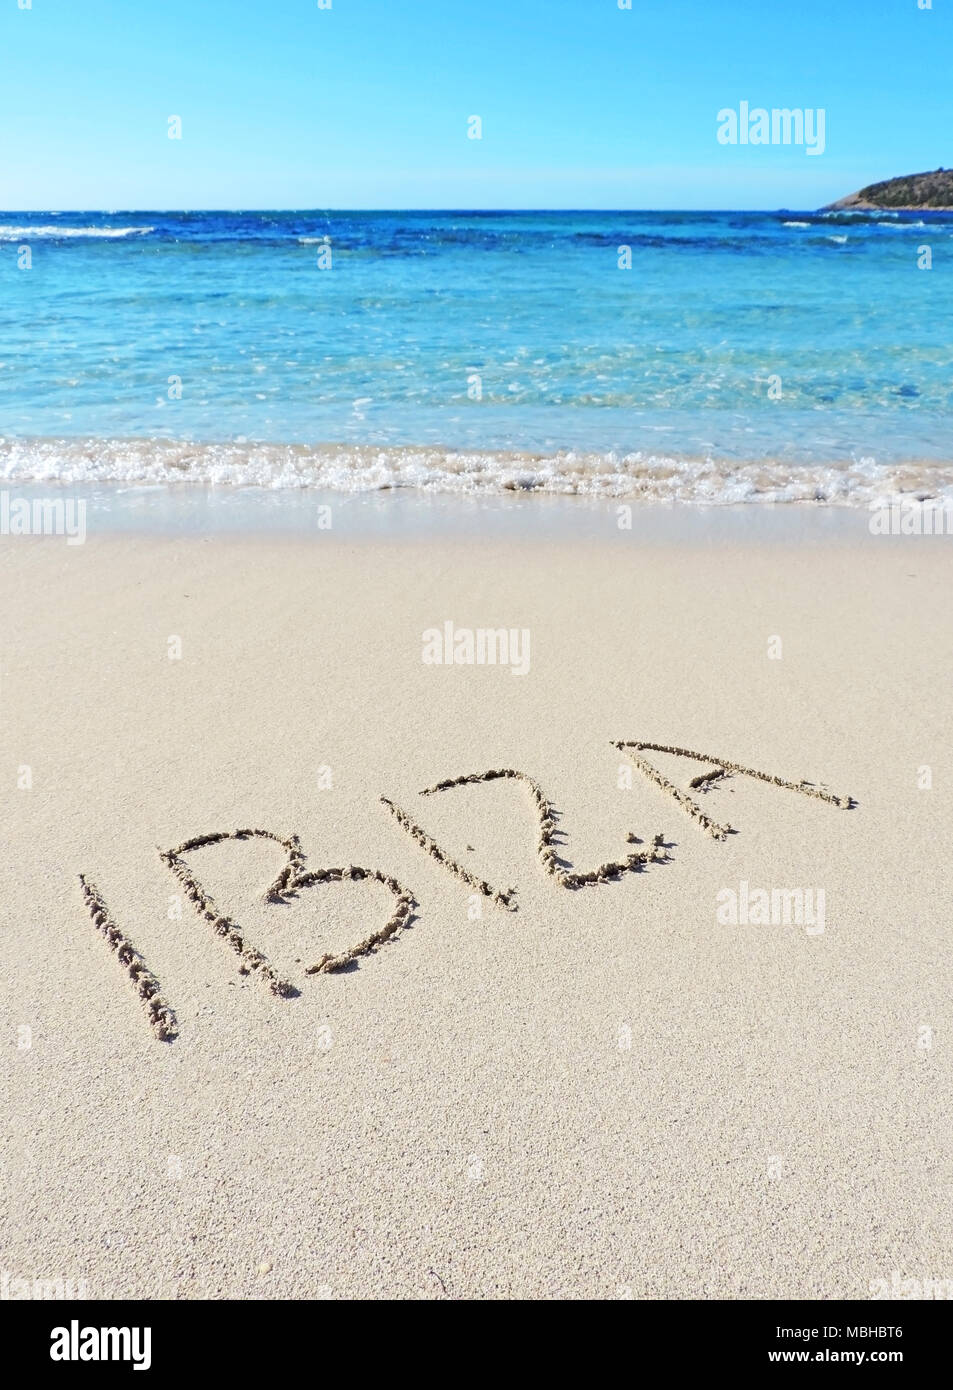 Ibiza texto, dibujo en la arena. Destino de viaje, vacaciones de playa en la isla de Ibiza. Foto de stock